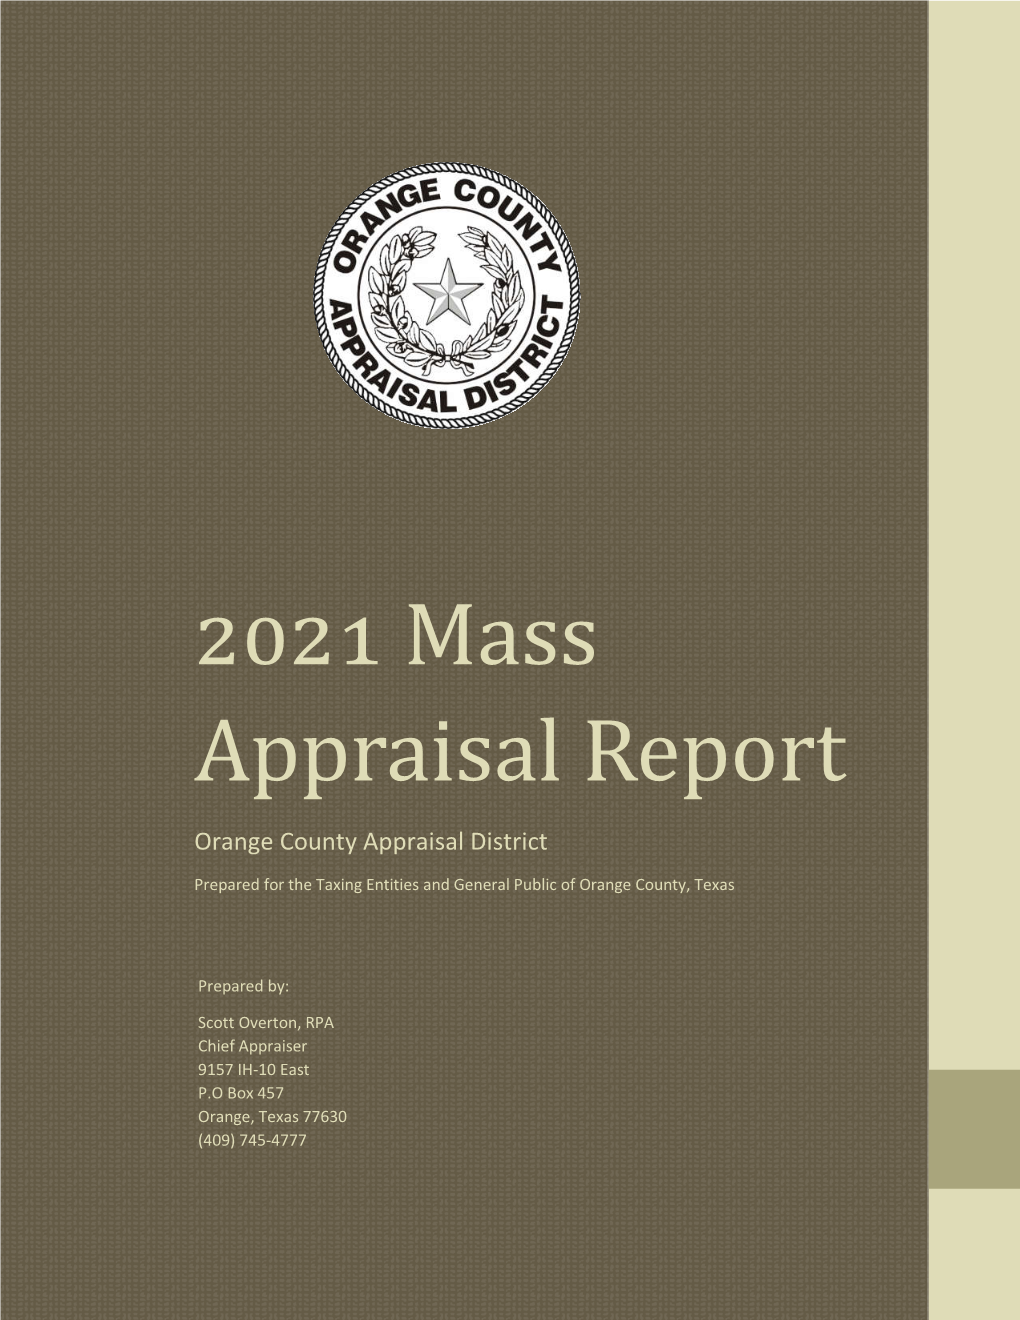 2021 Mass Appraisal Report Appraisal Mass 2021